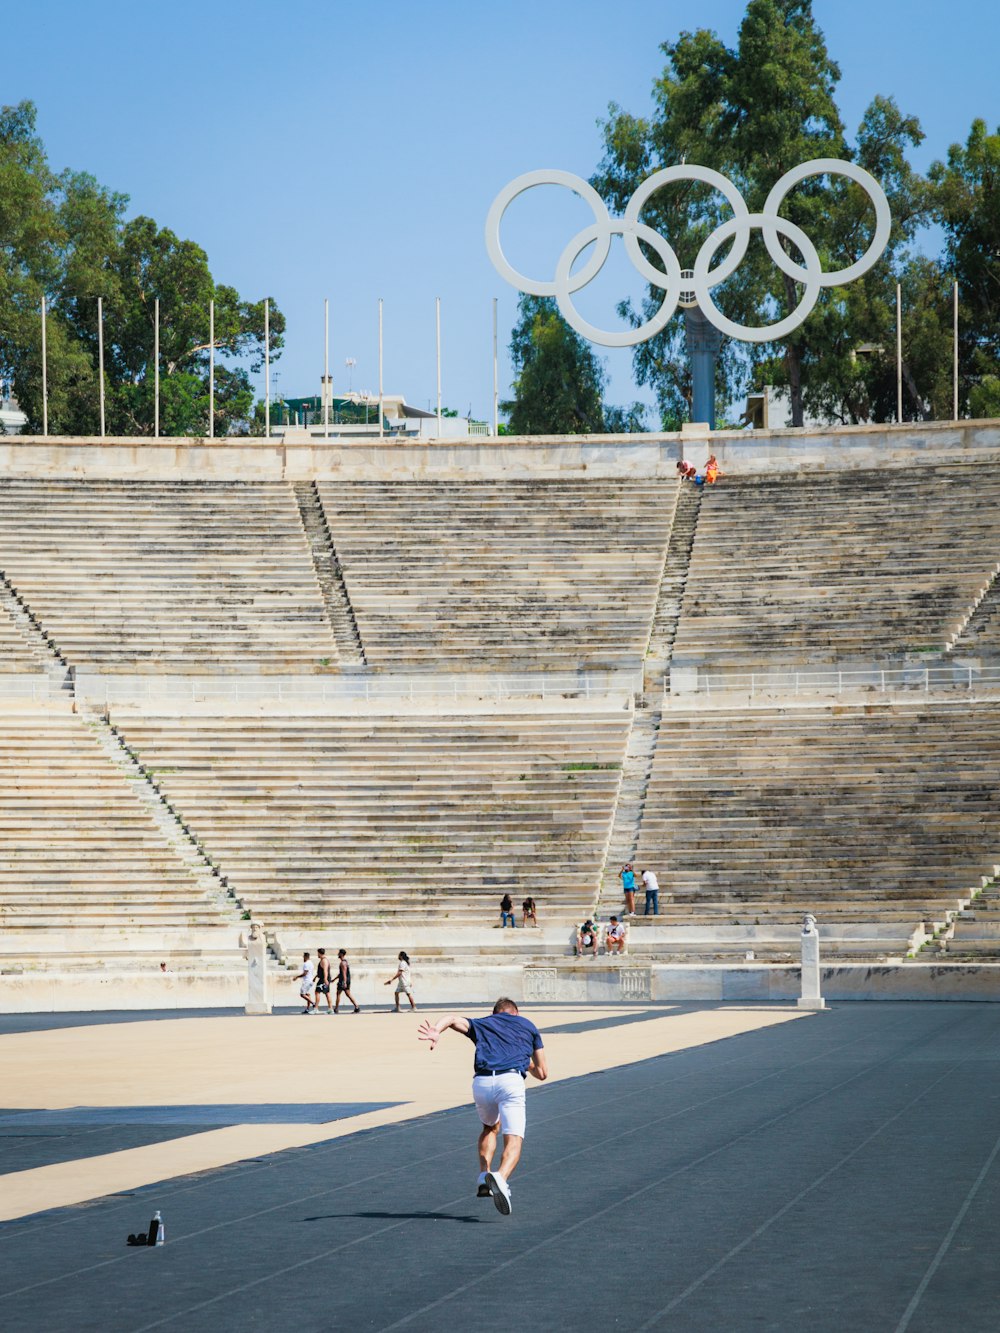 Un homme fait du skateboard devant un stade